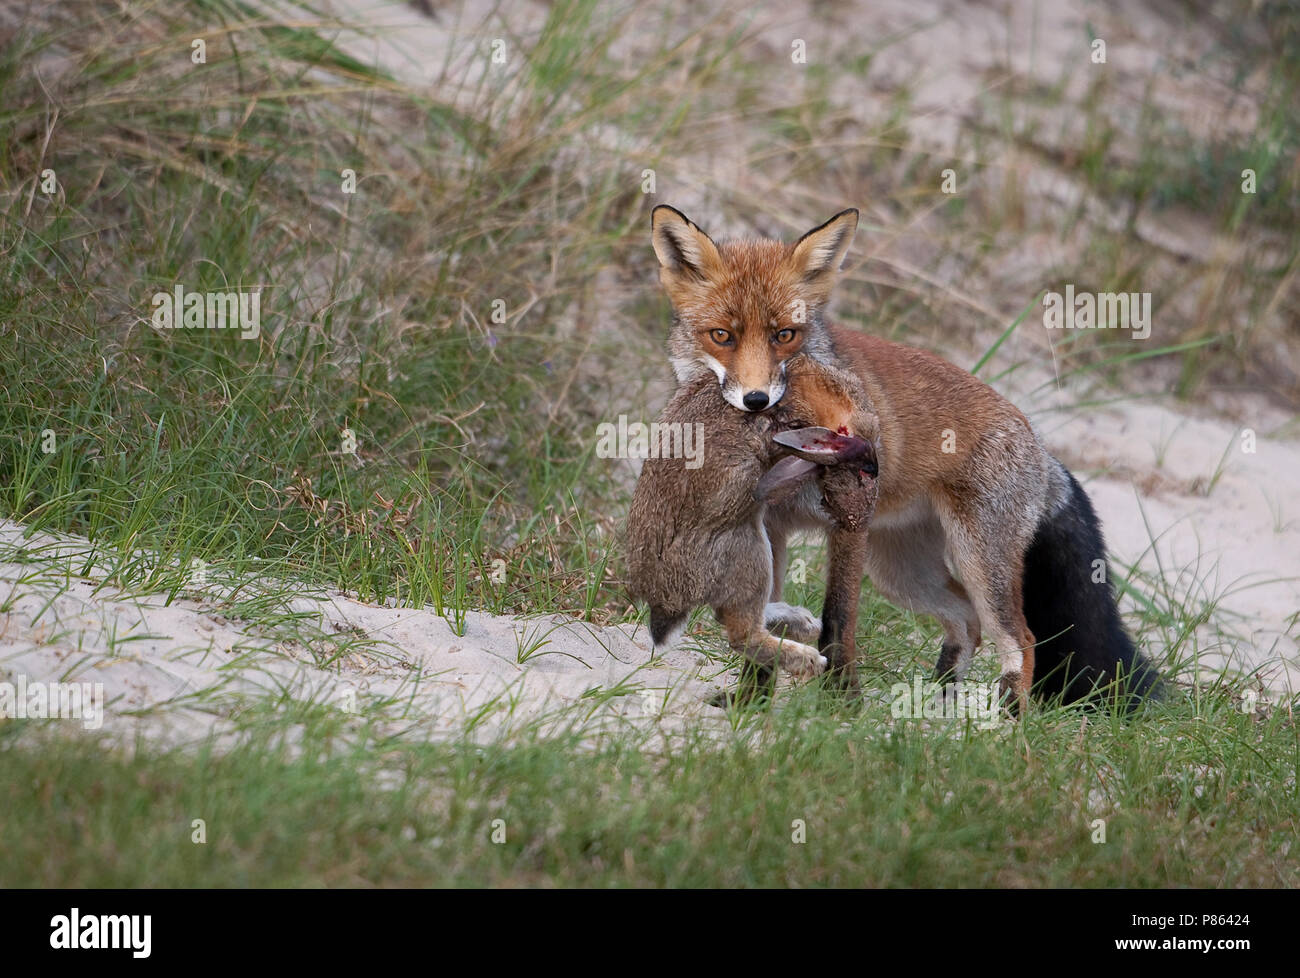 Moedig aan historisch dichtbij Vos met konijn als prooi in duinengebied; Red fox with prey in the Dunes  Stock Photo - Alamy